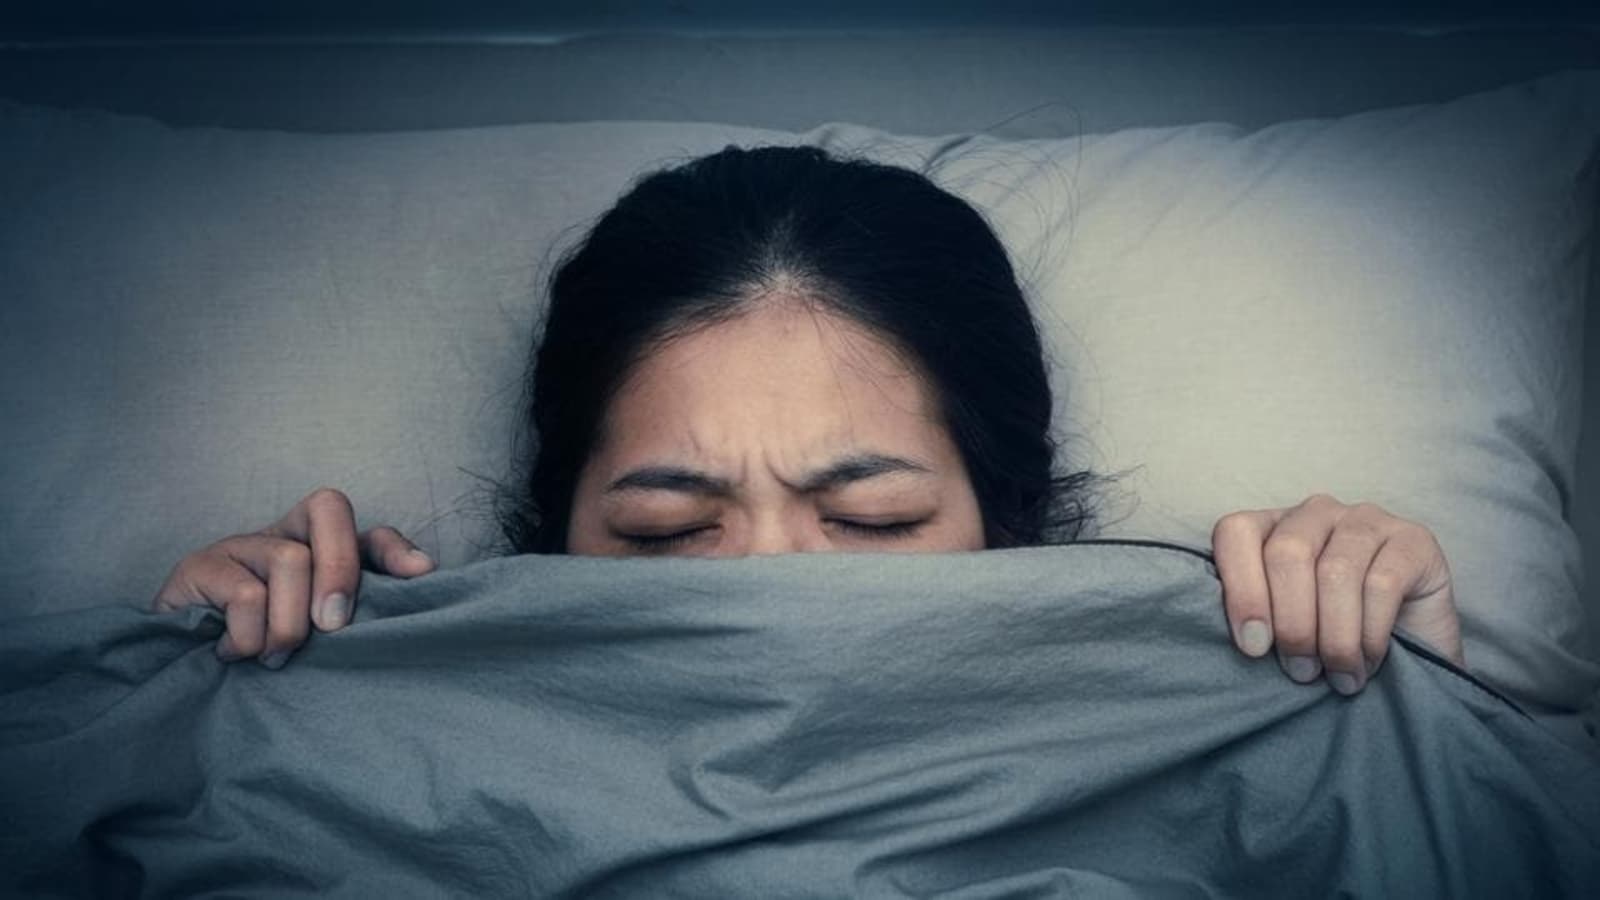 बुरे सपने ऑटोइम्यून बीमारी के भड़कने का प्रारंभिक चेतावनी संकेत हो सकते हैं: नया अध्ययन